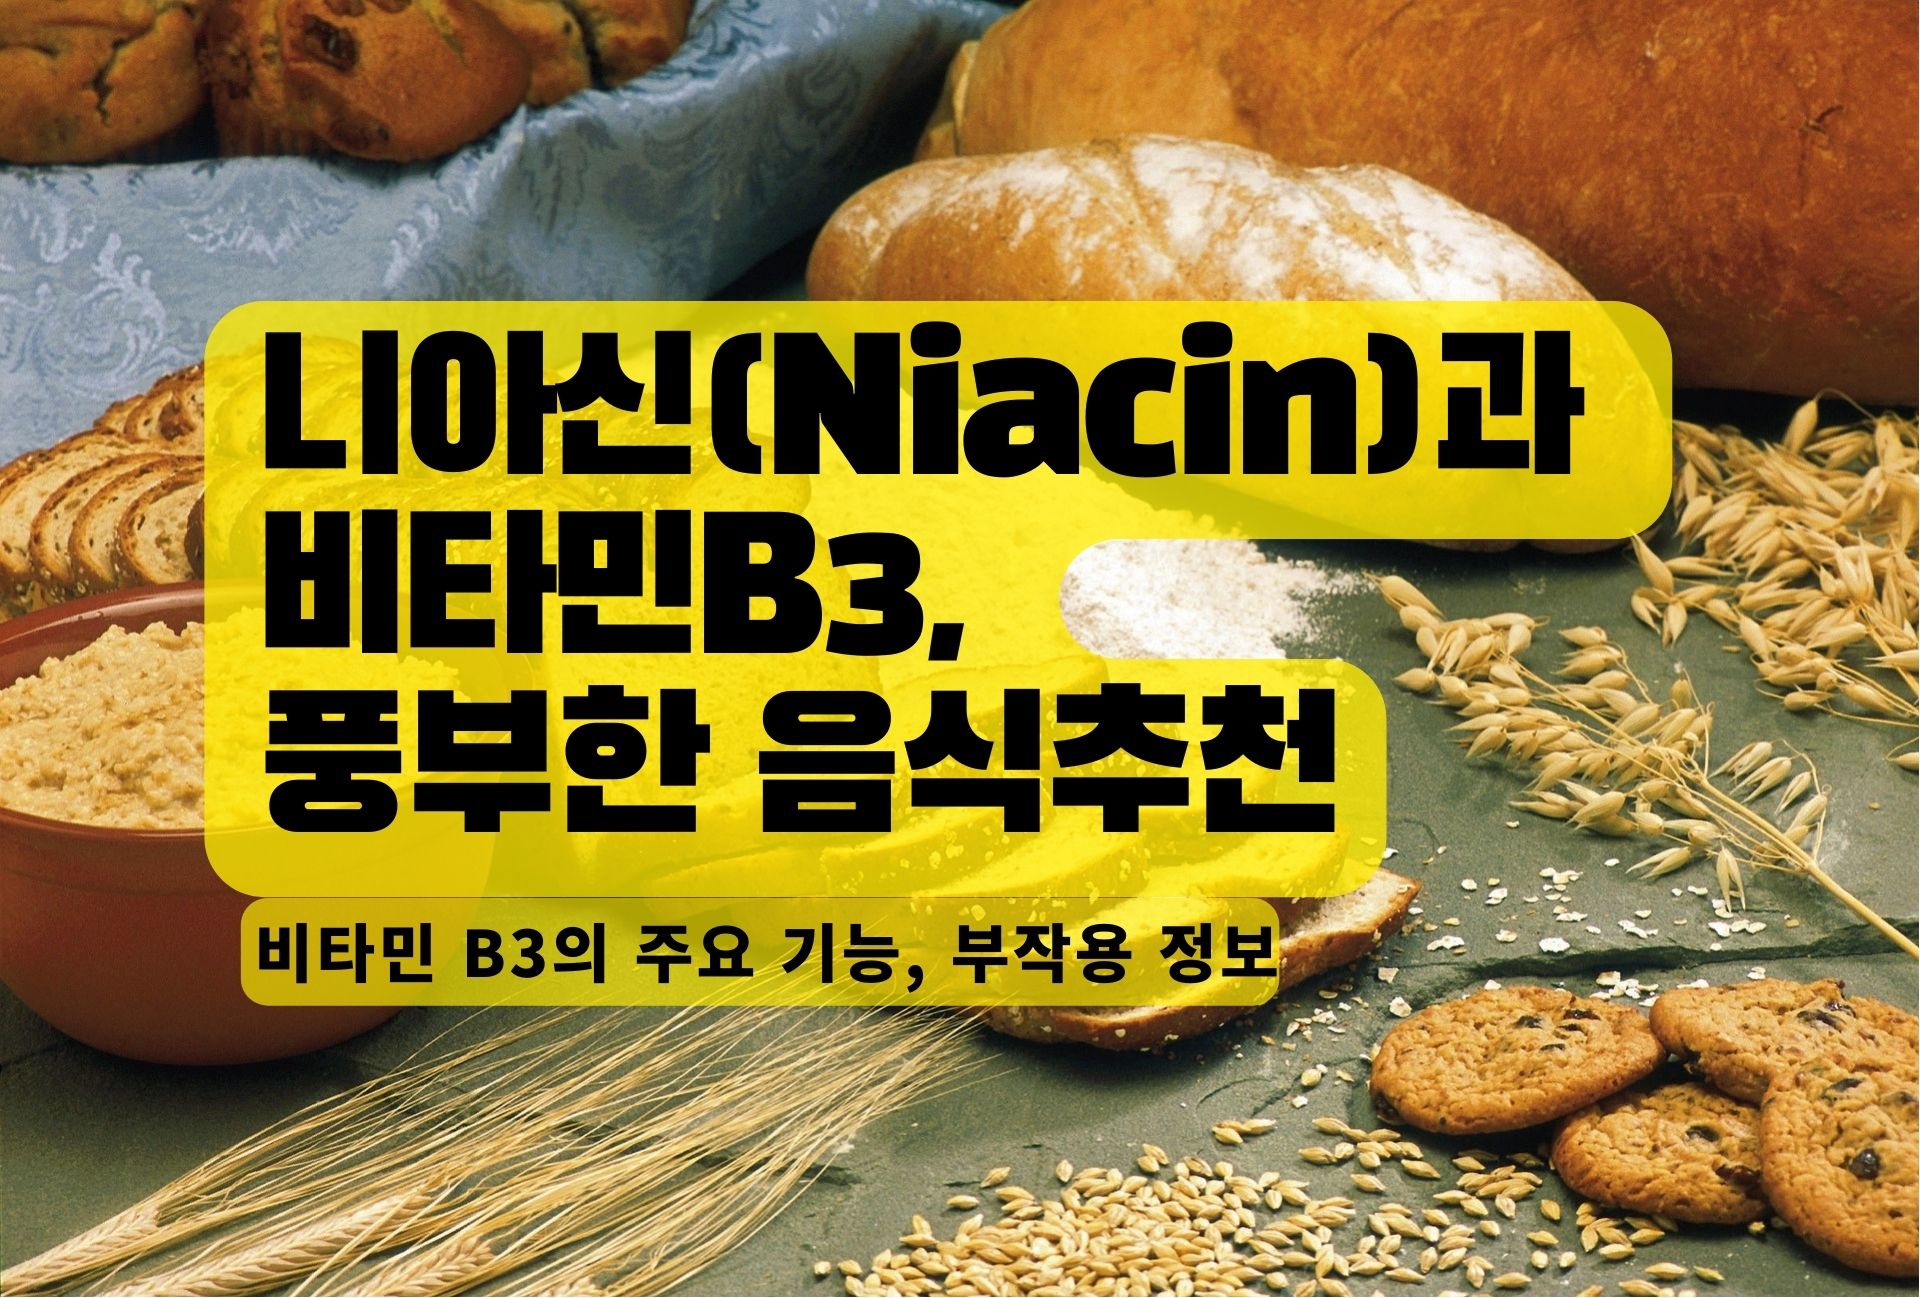 You are currently viewing 니아신(Niacin)과 비타민B3, 그리고 풍부한 음식추천